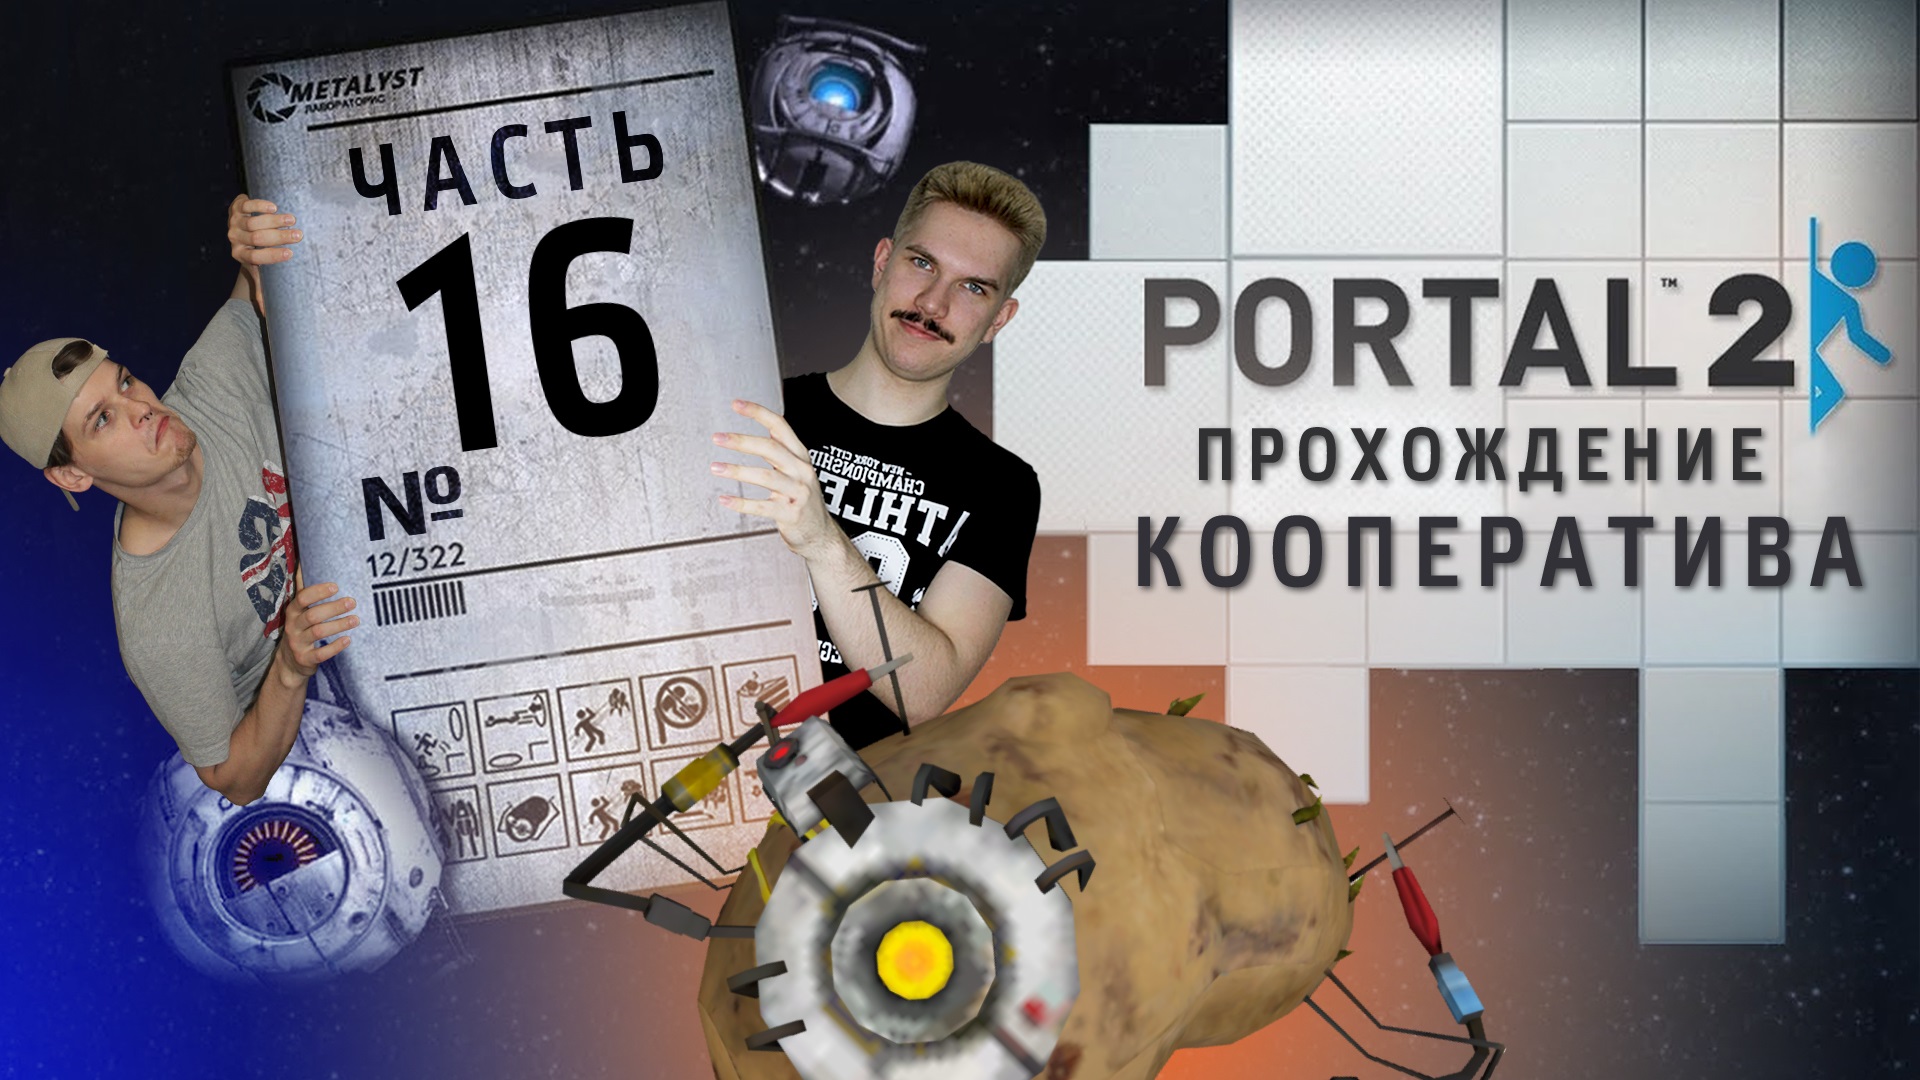 Portal 2 кооператив как пройти фото 40